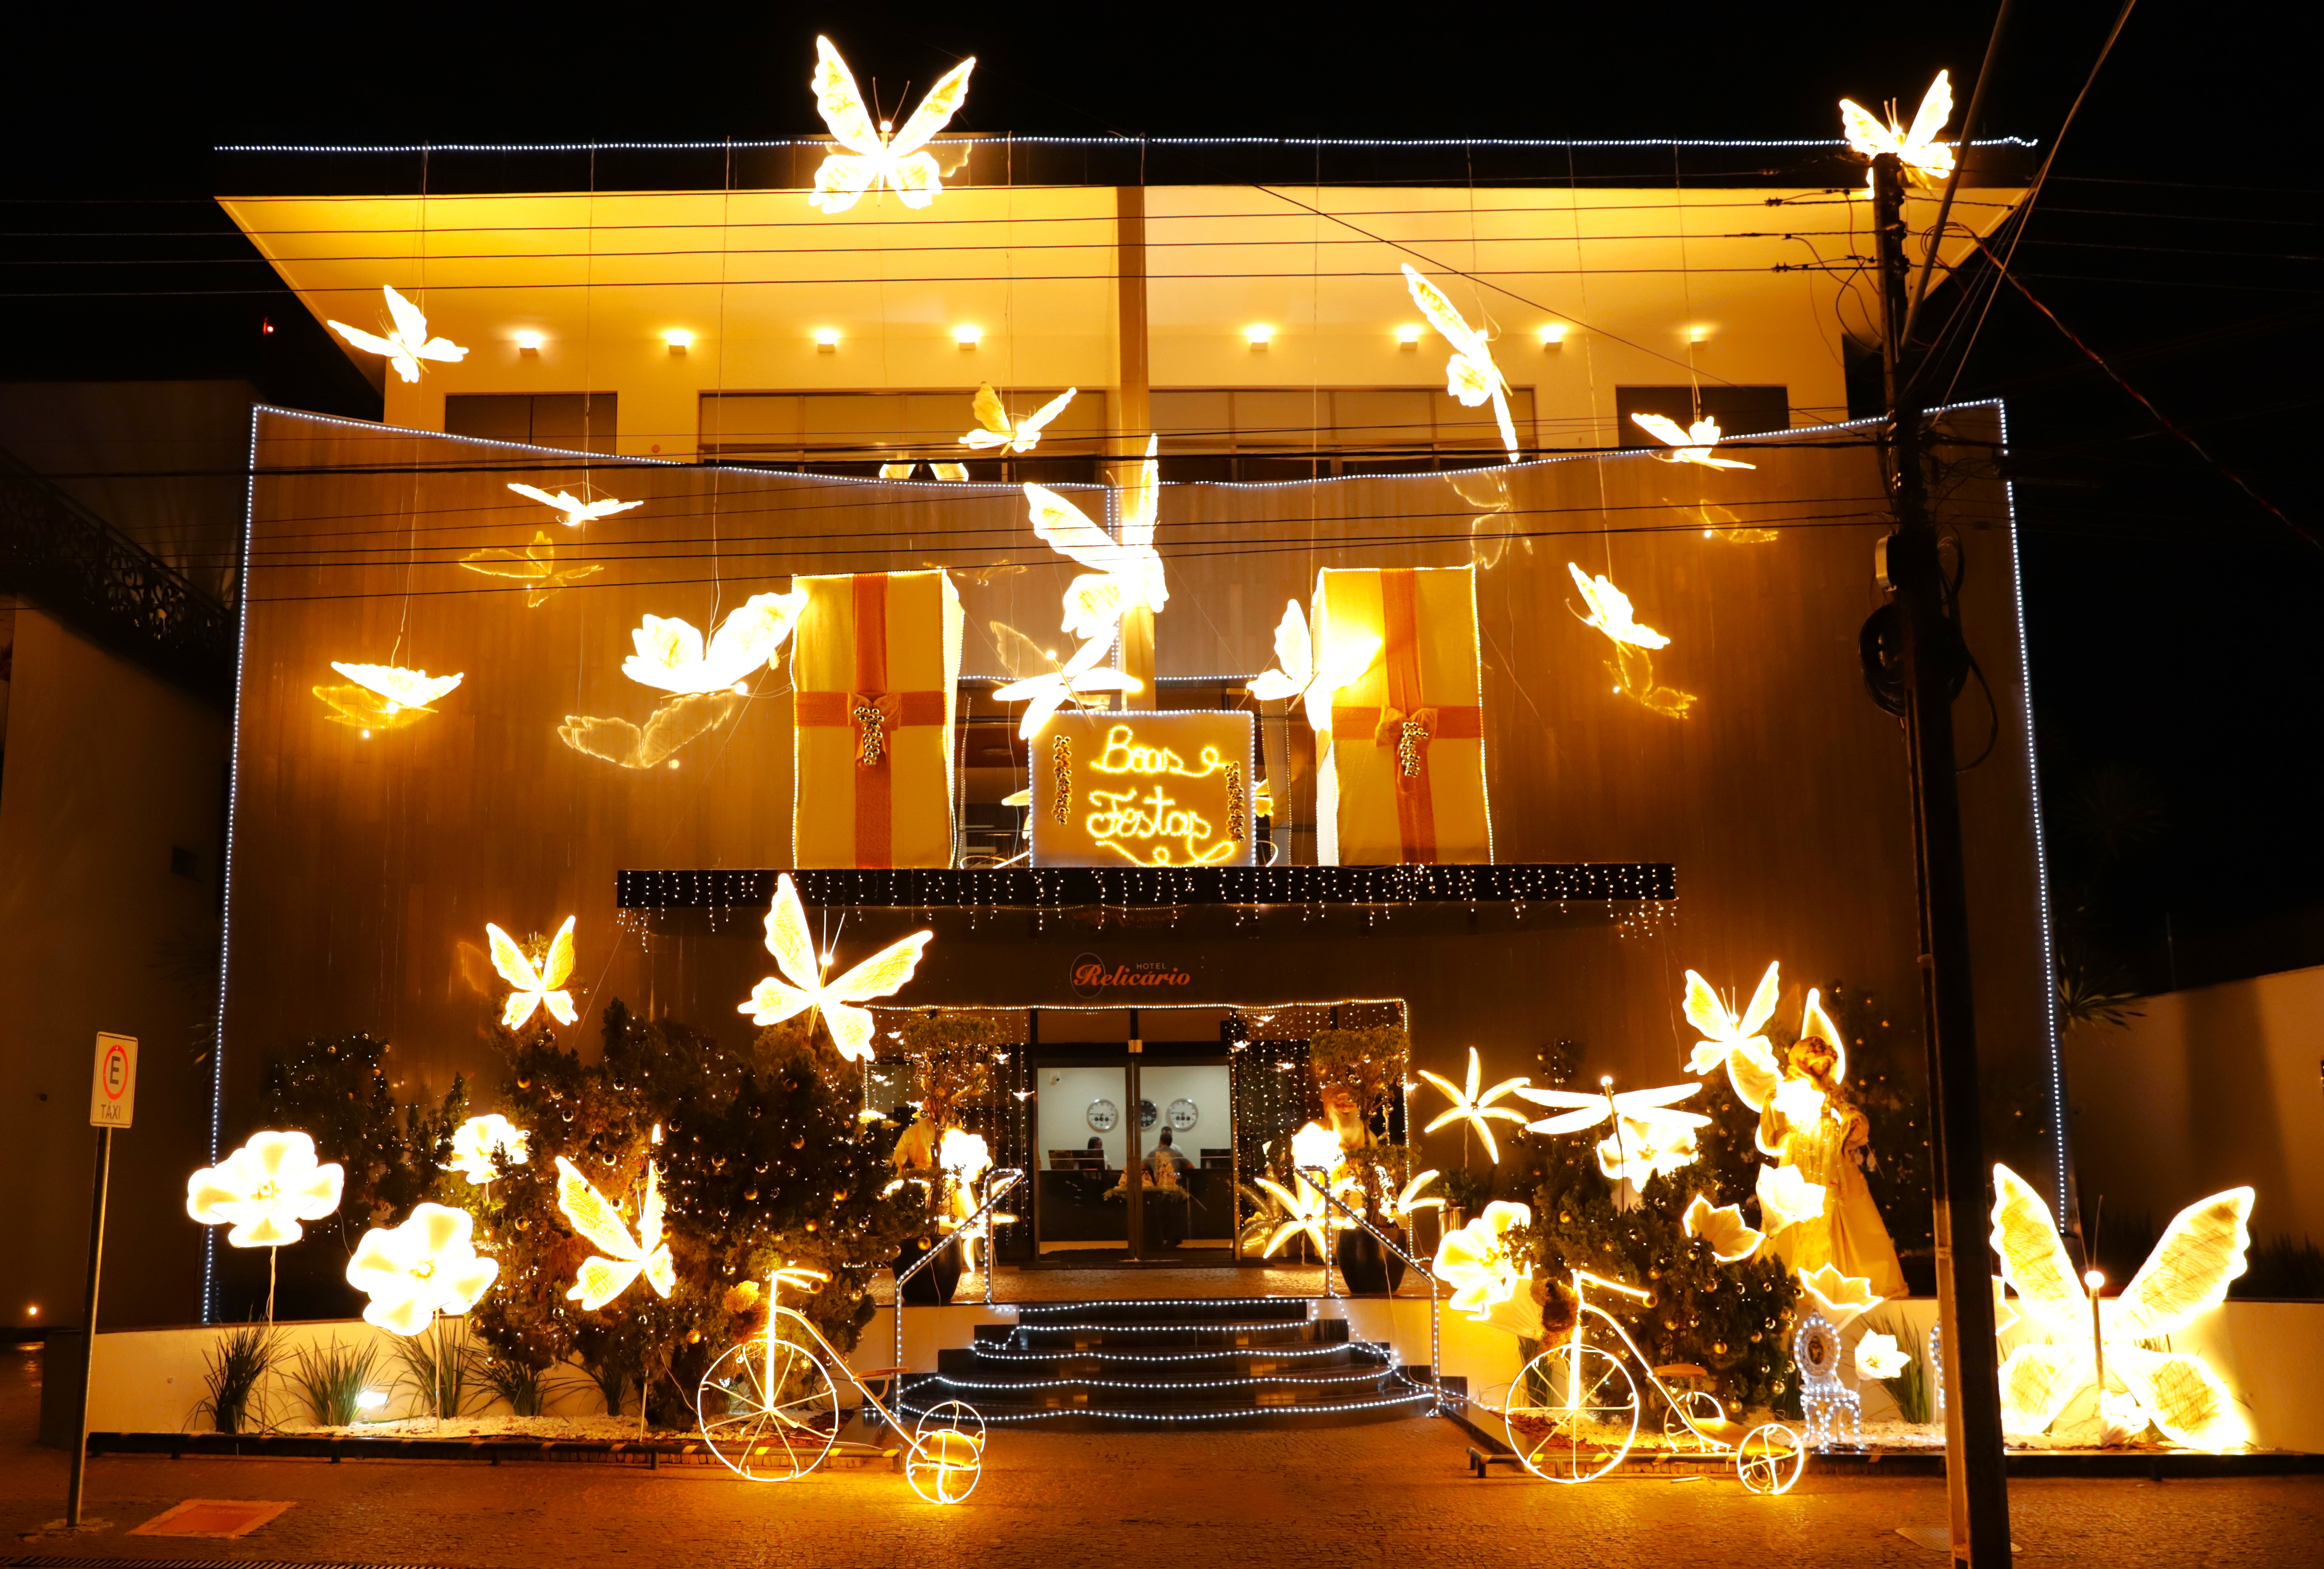 Desde a primeira edição, o Hotel Relicário investe nos enfeites natalinos e participa do concurso Natal de Luz